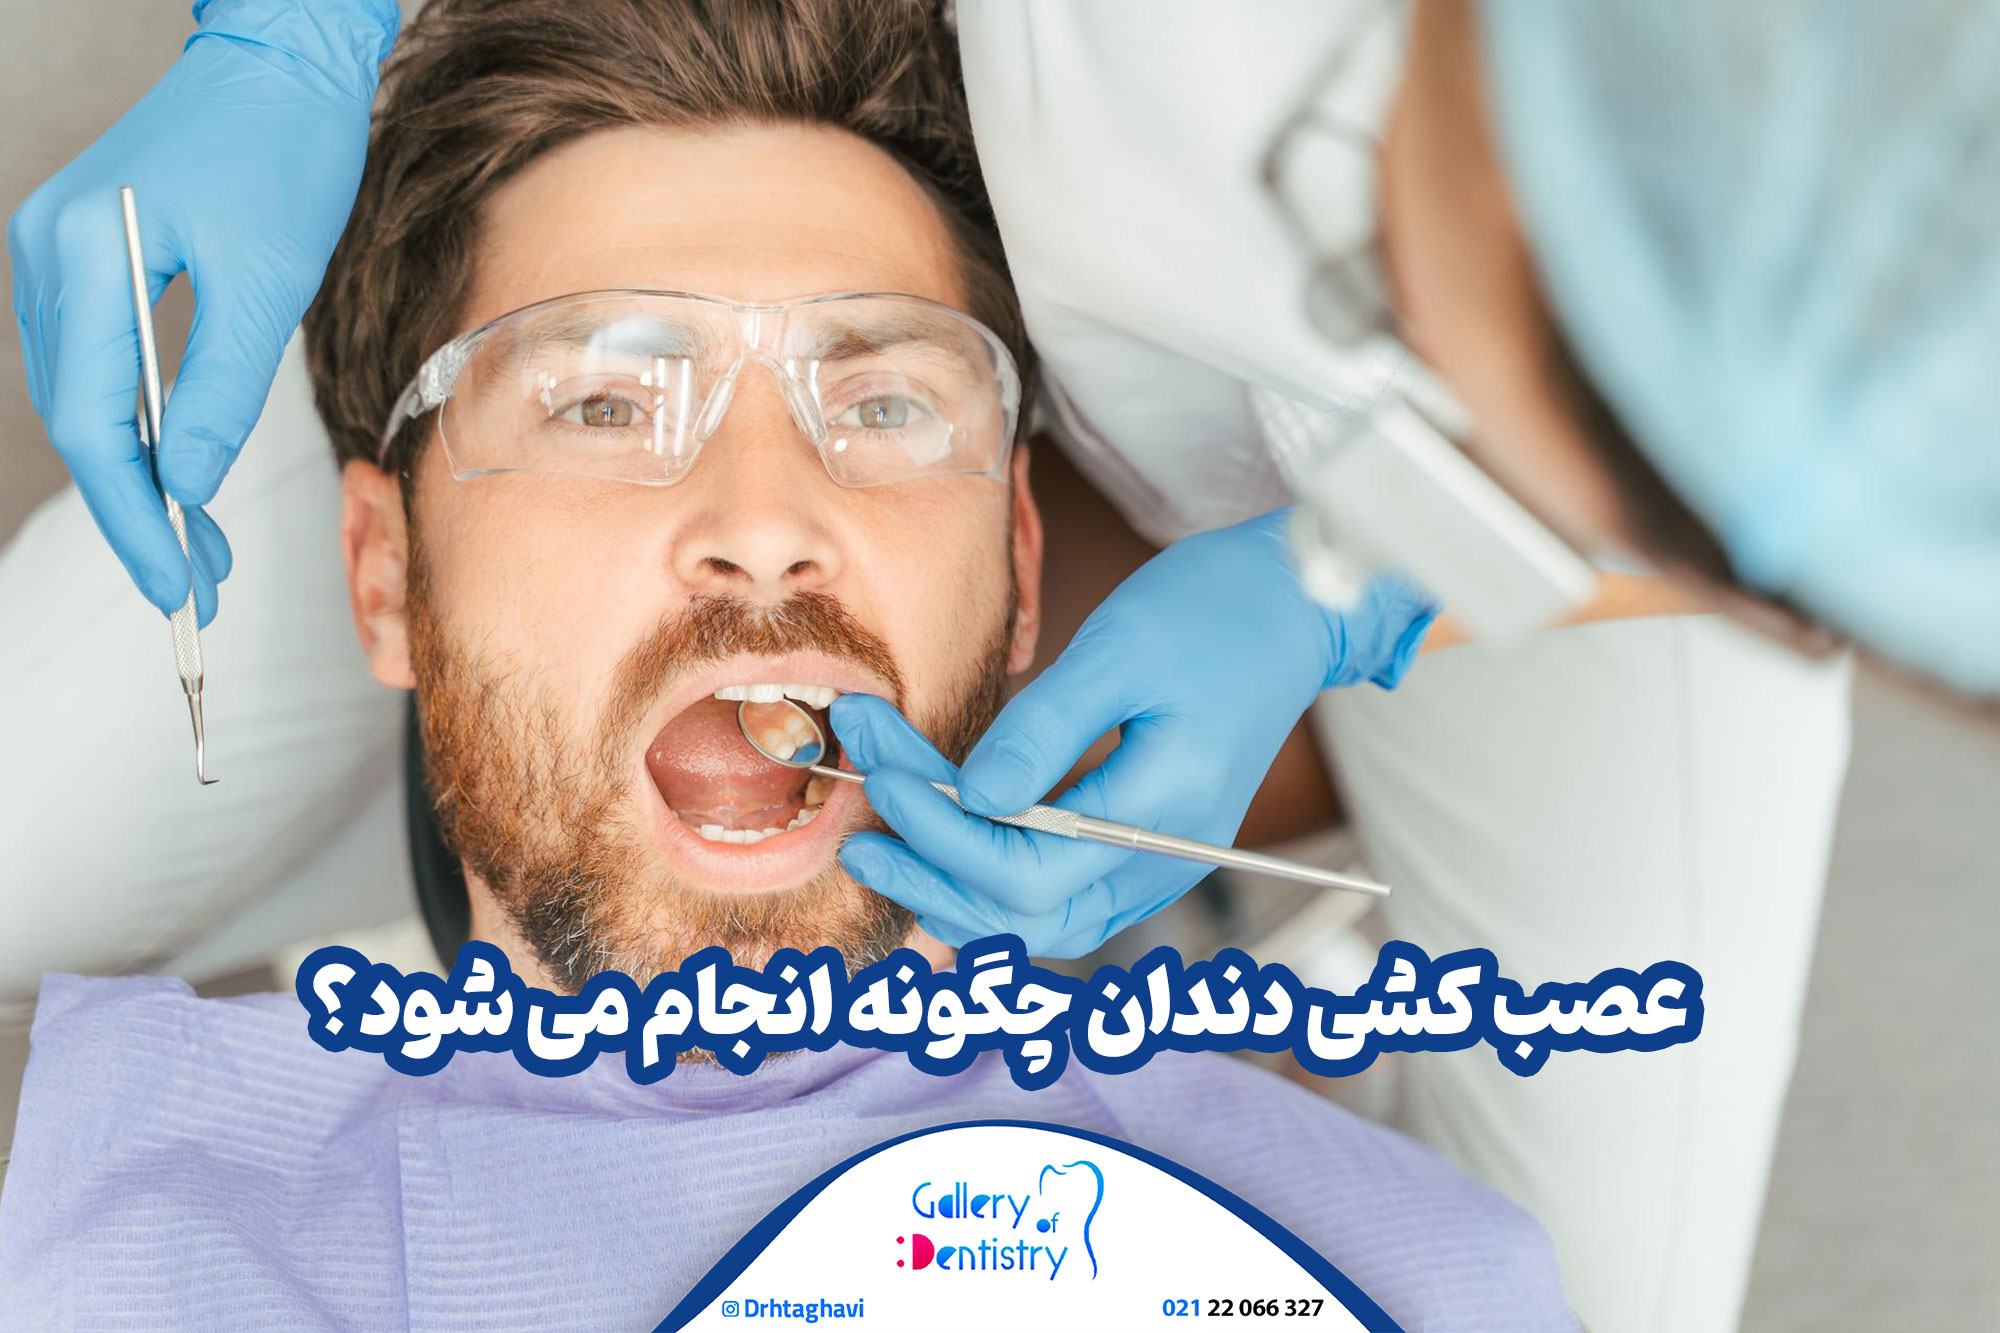 عصب کشی دندان چگونه انجام می شود؟